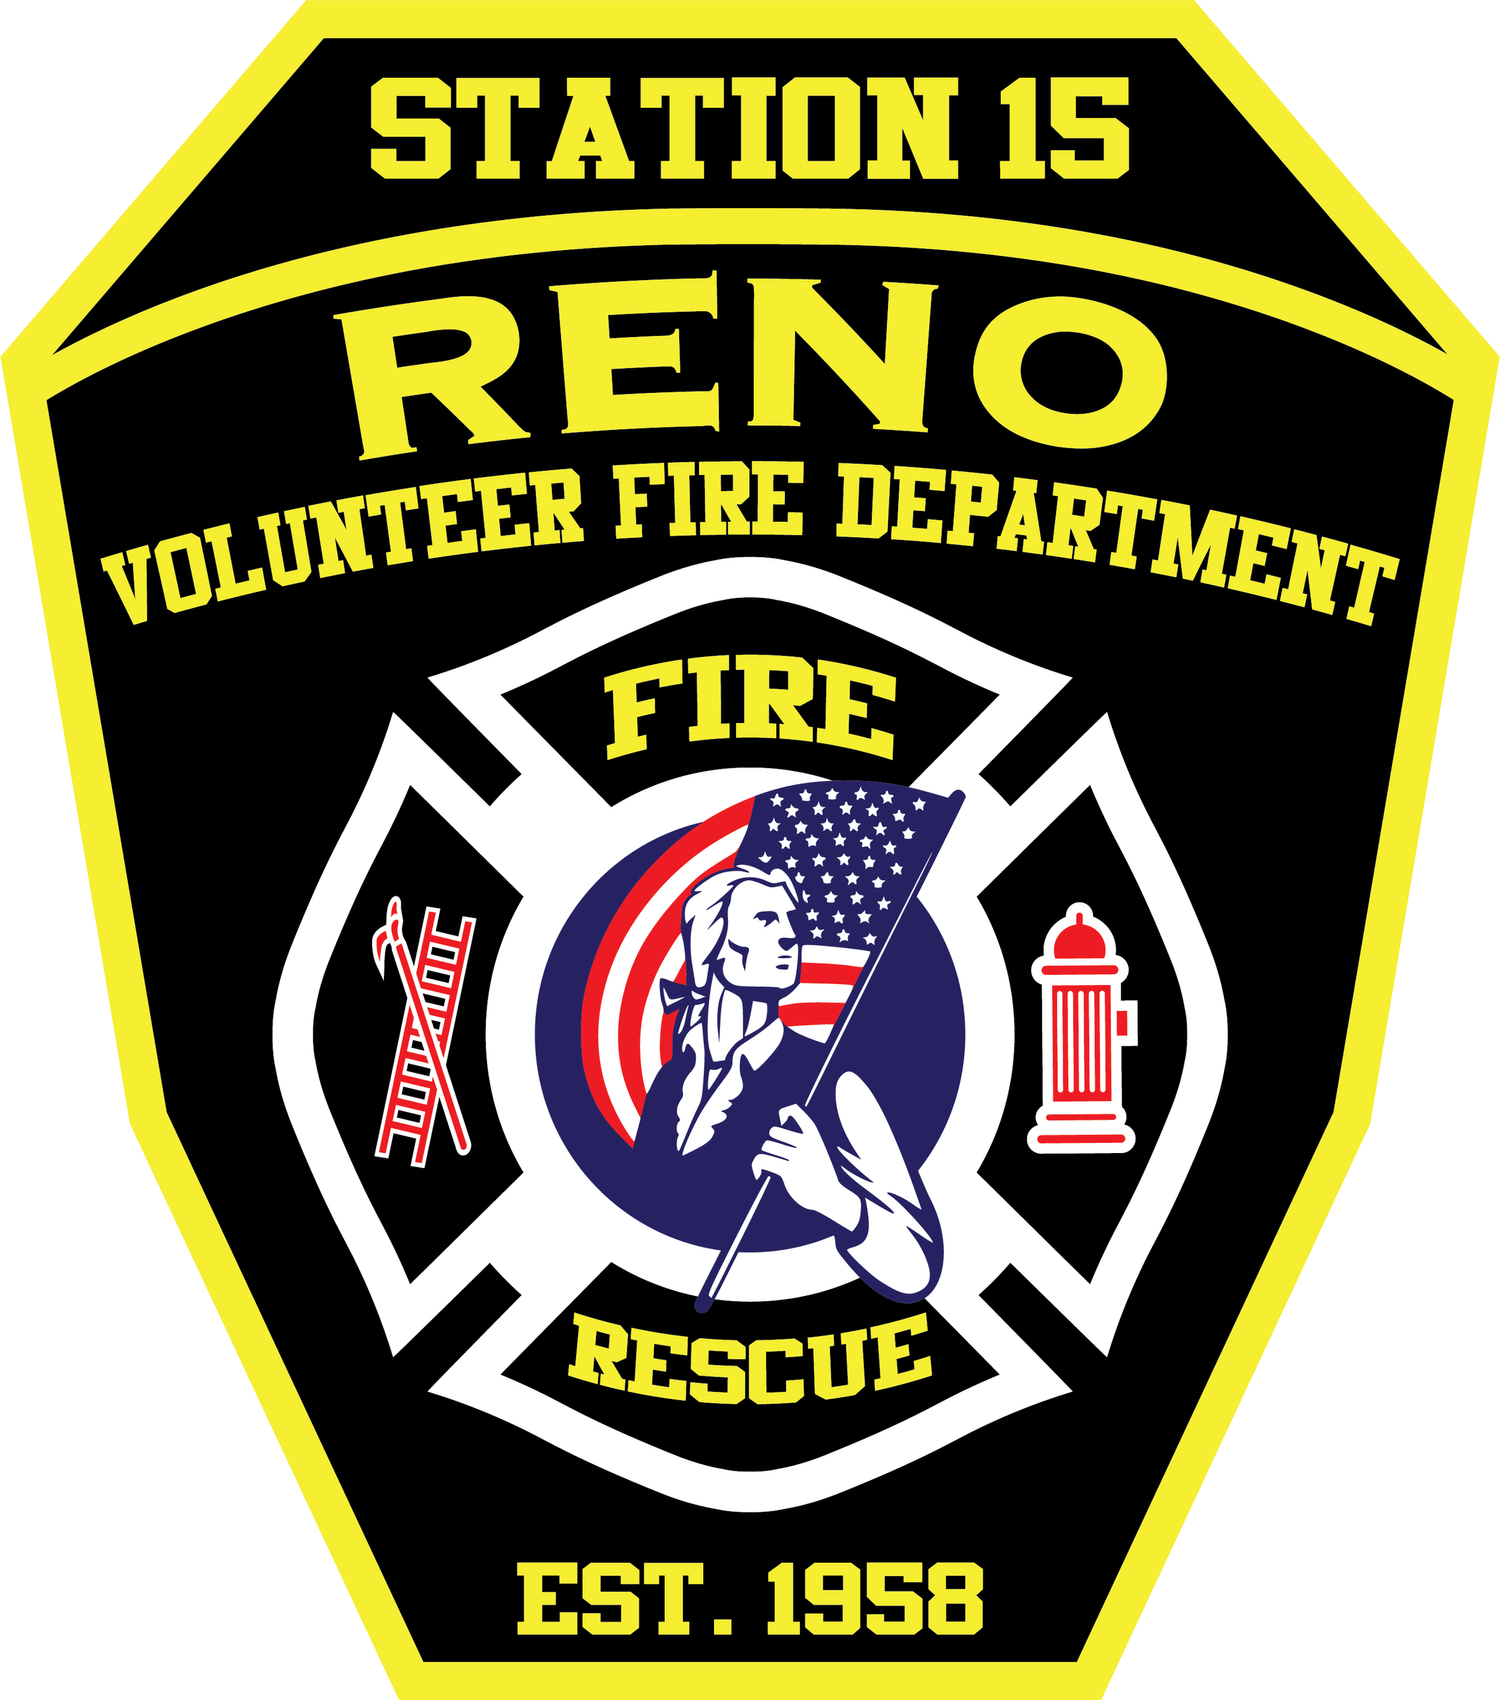 Reno VFD